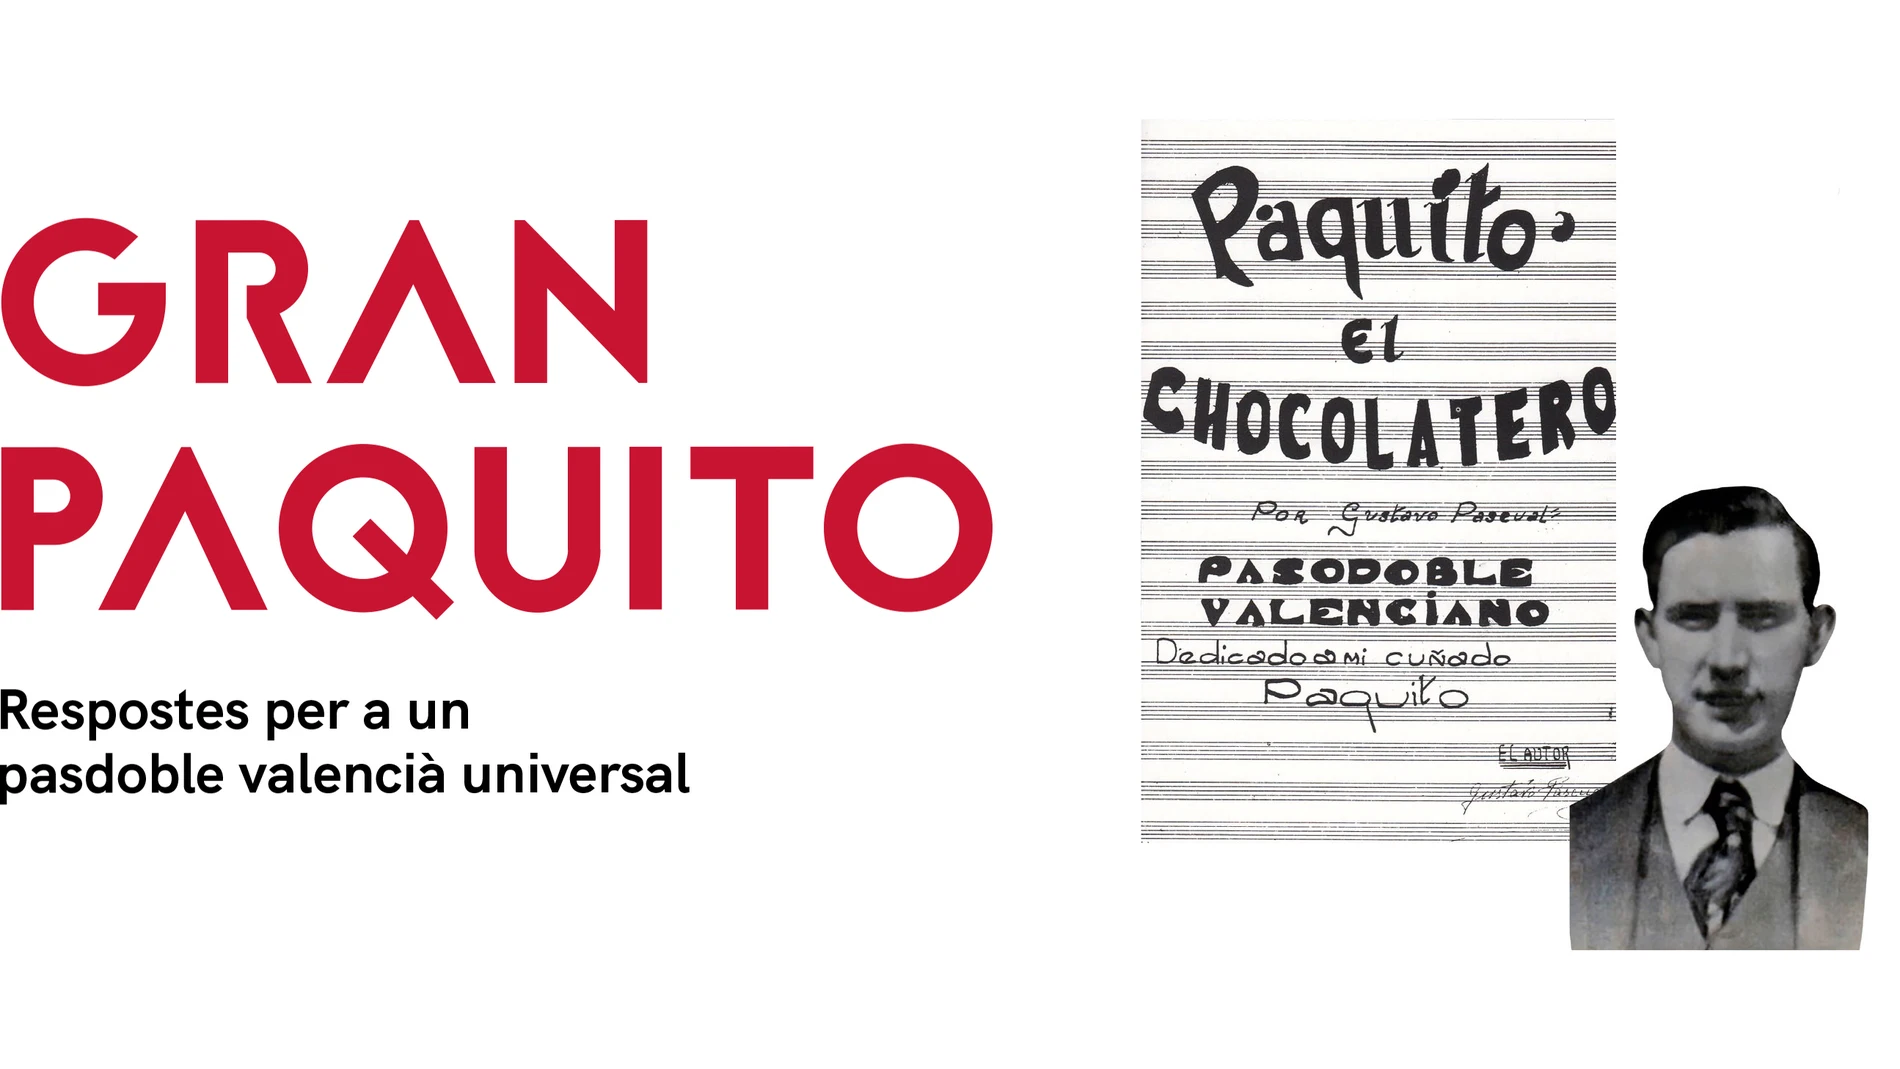 Cartel anunciador del homenaje a "Paquito el chocolatero"